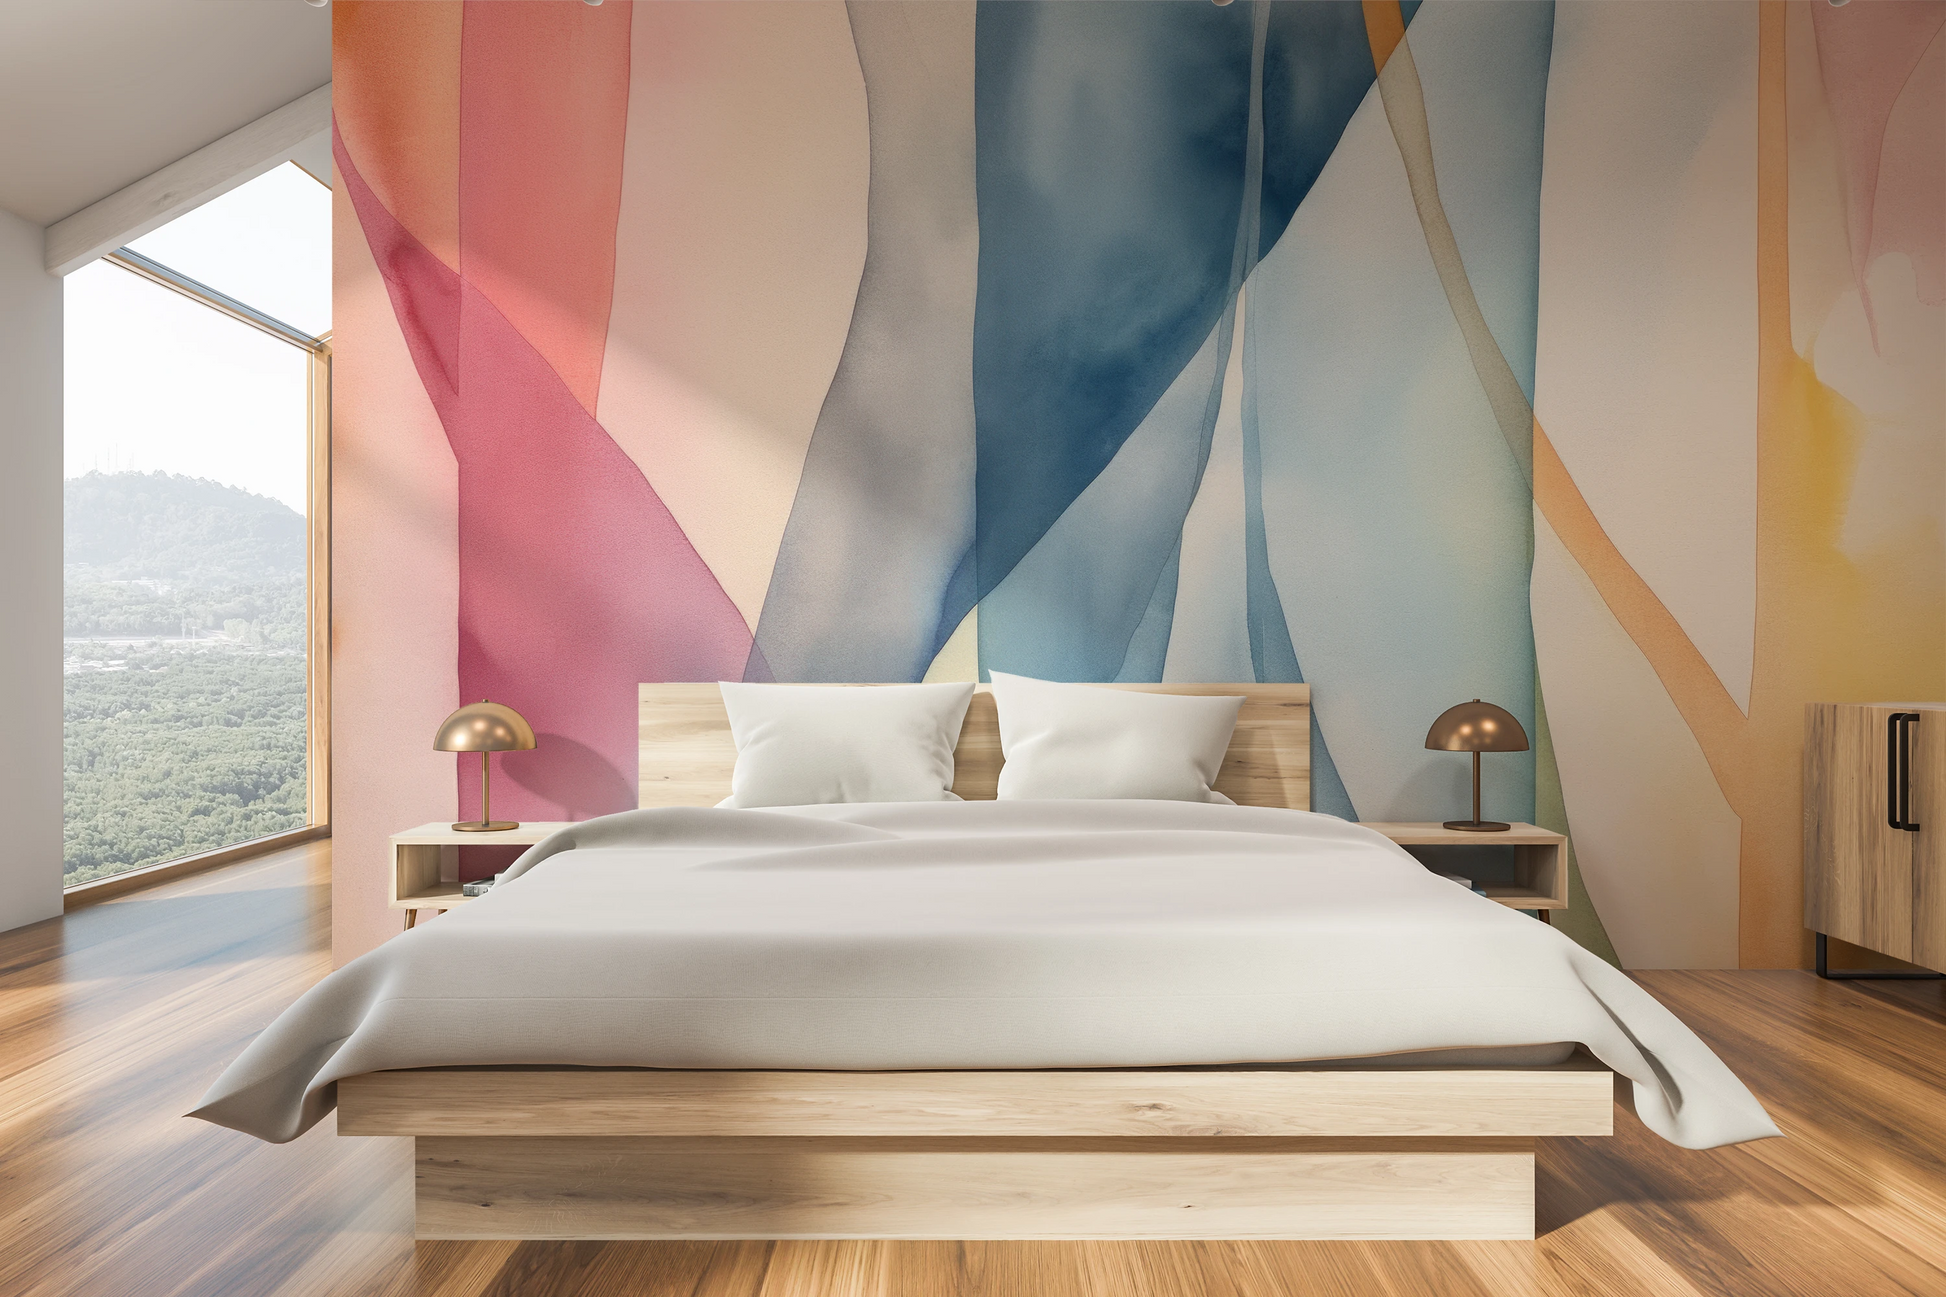 Fototapeta malowana o nazwie Pastel Dreamscape pokazana w aranżacji wnętrza.